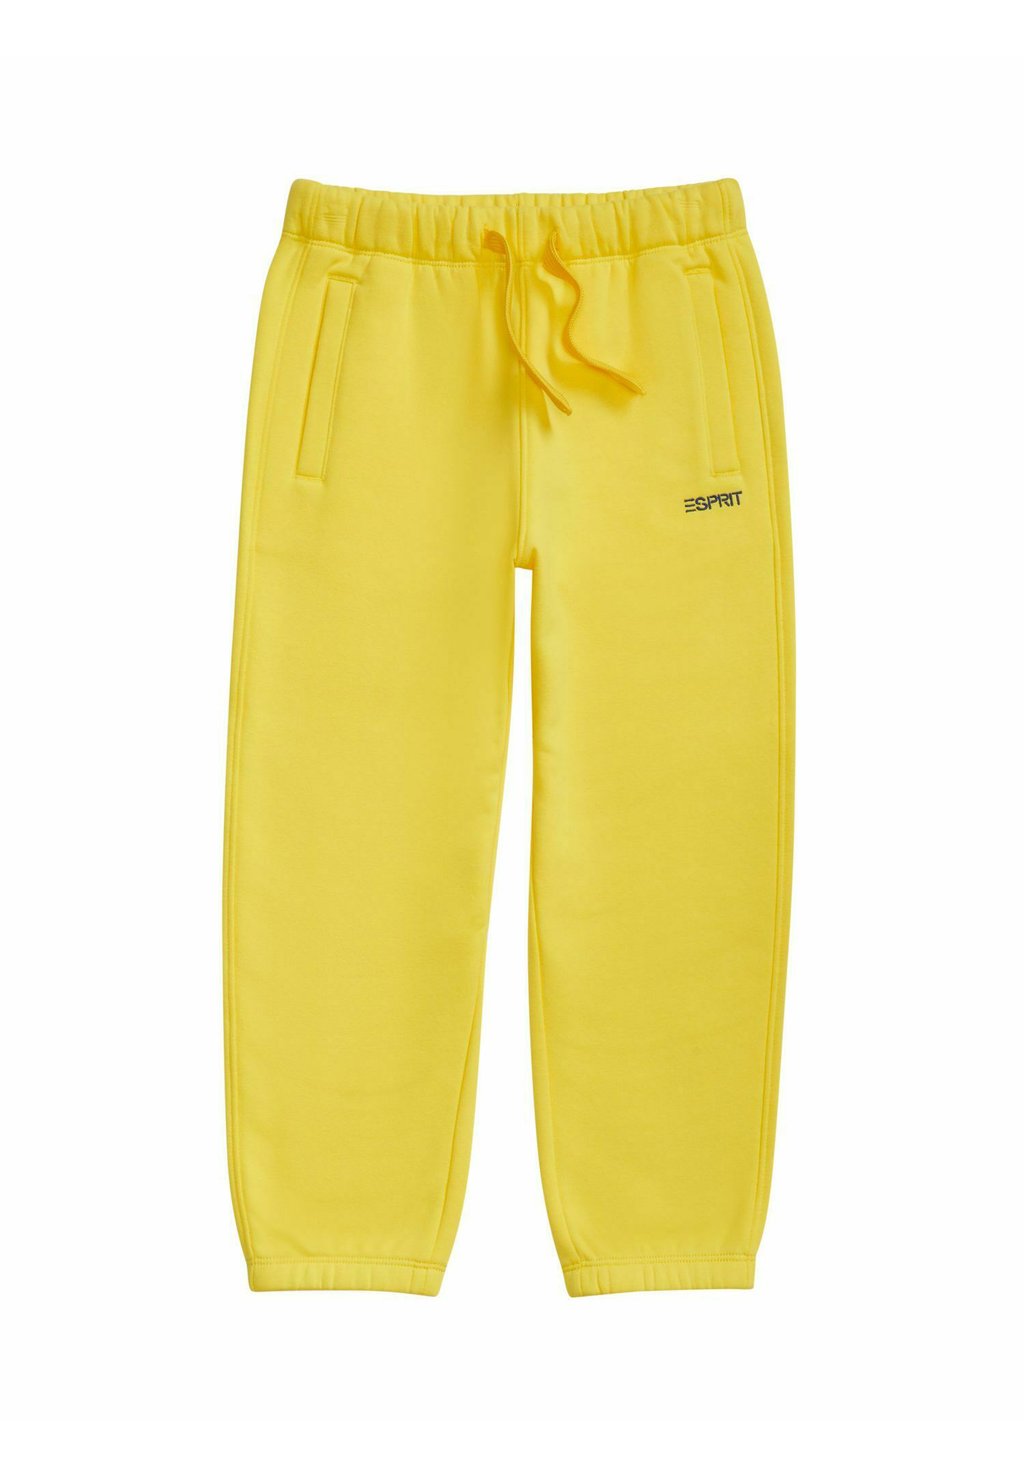 Тренировочные брюки Esprit, светло-желтый